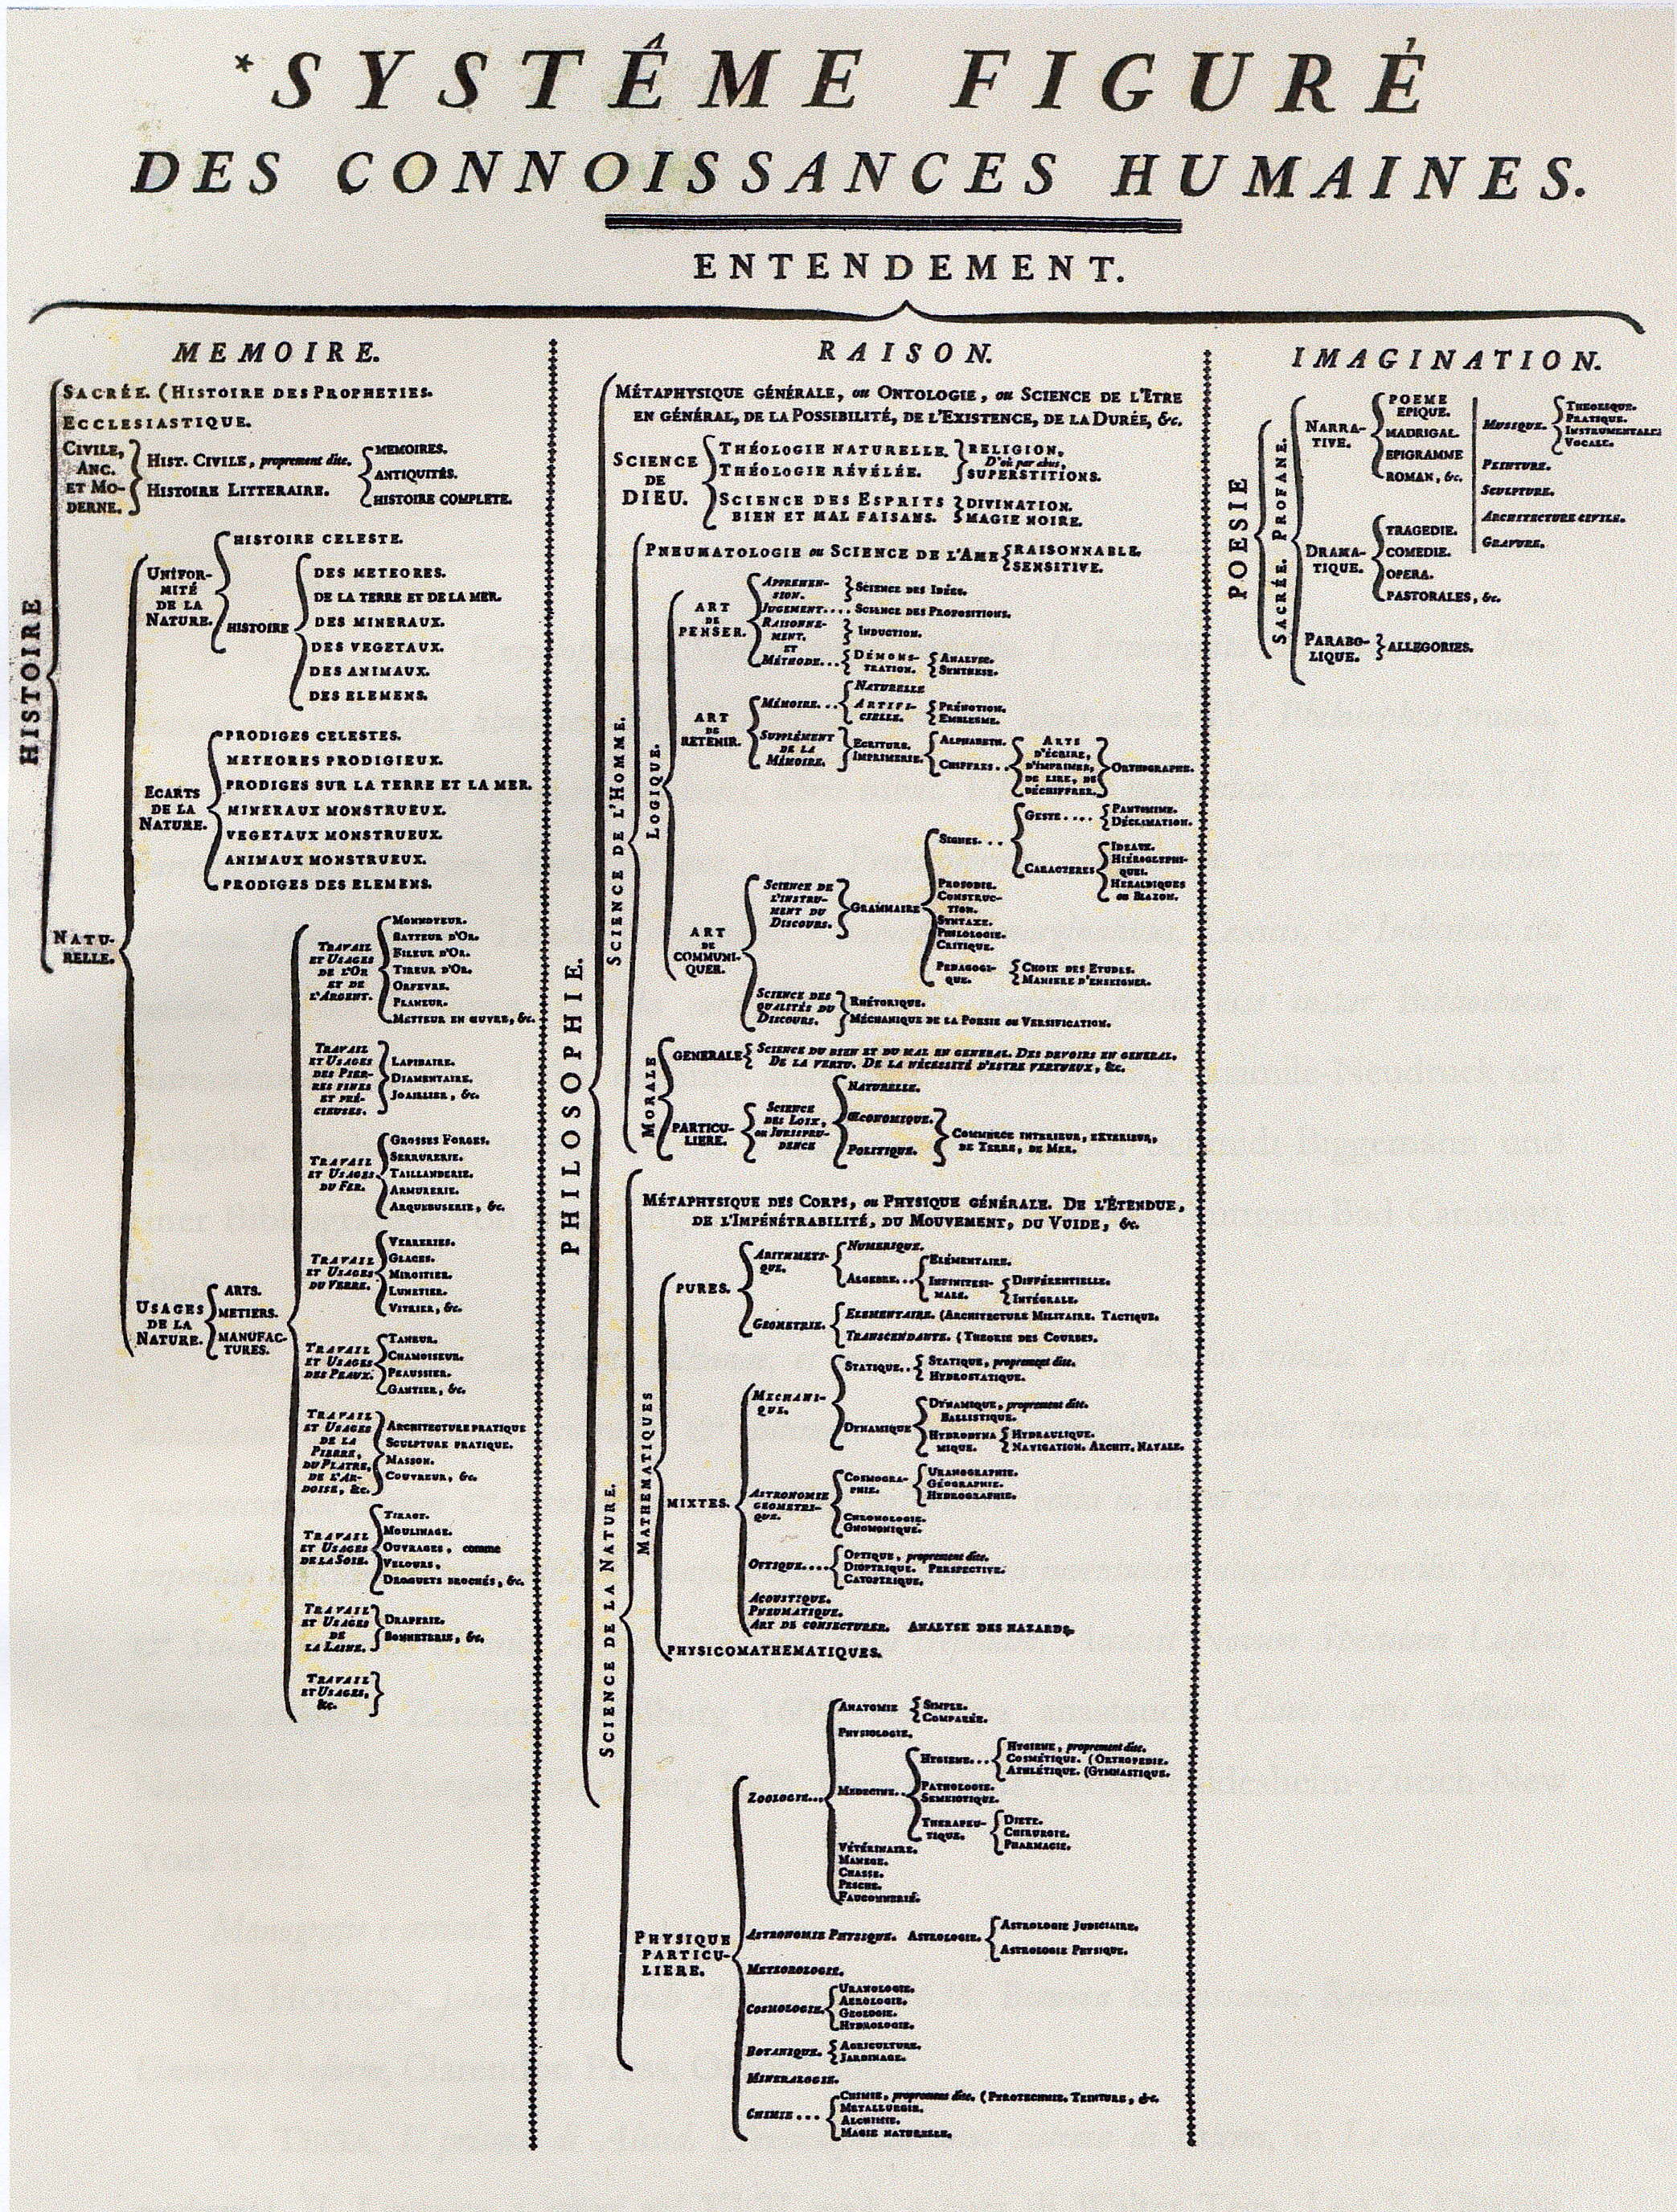 L albero delle conoscenze della Encycpédie di Diderot e d Alembert, ispirato al De dignitate di F. Bacon 11.2 John St